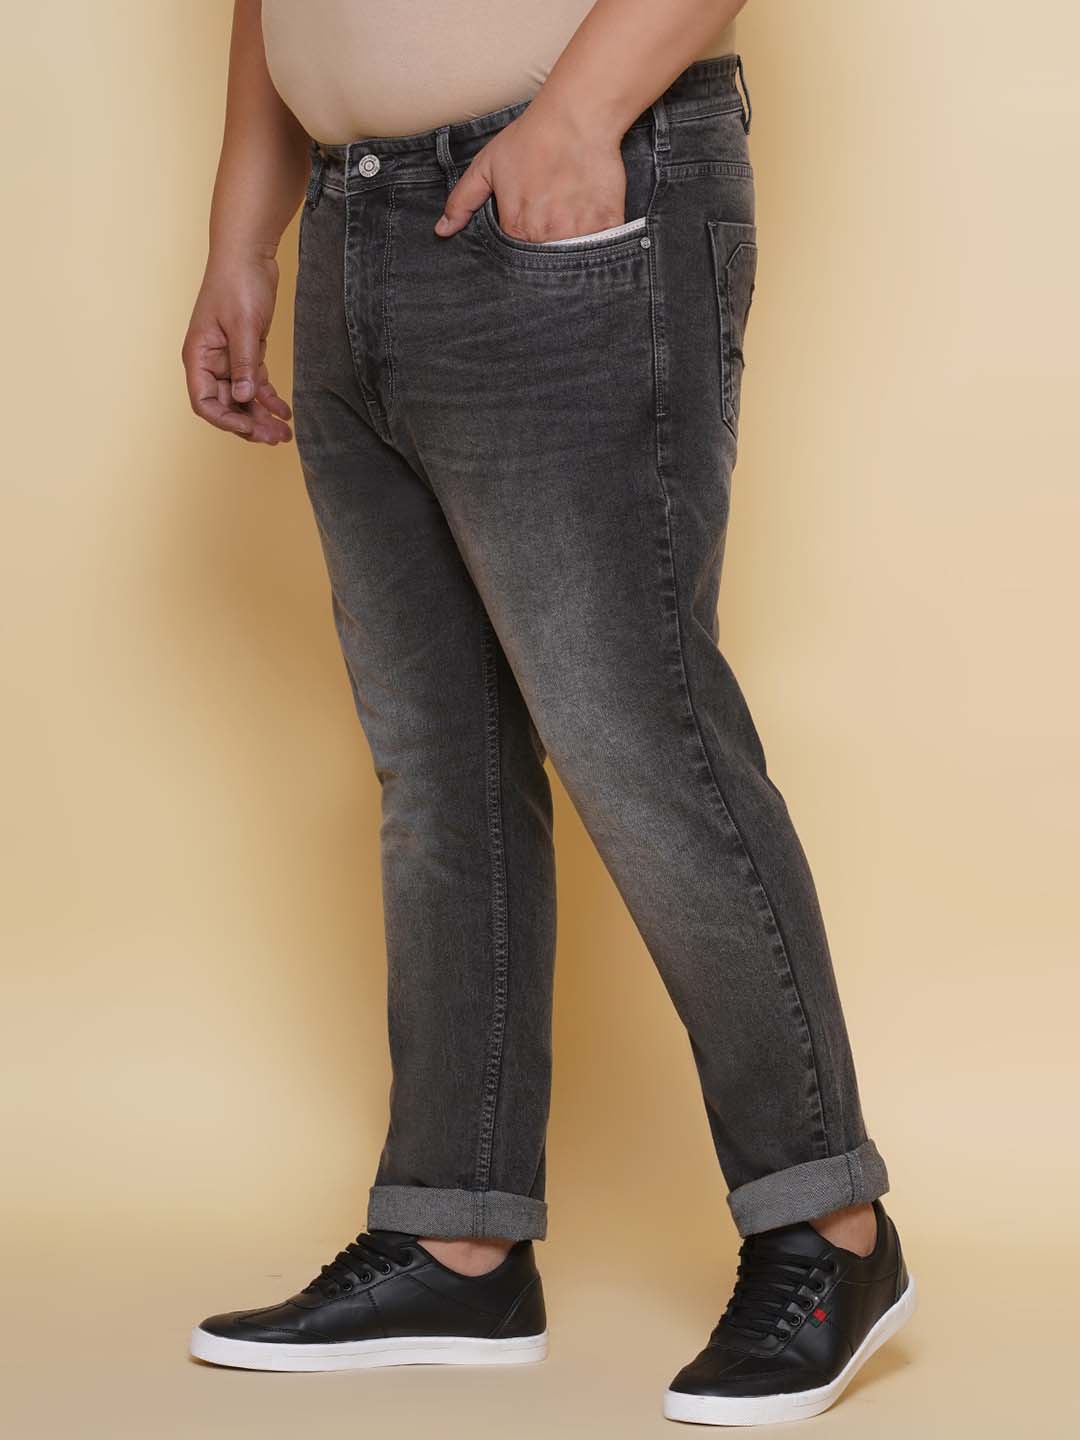 bottomwear/jeans/EJPJ25136/ejpj25136-4.jpg